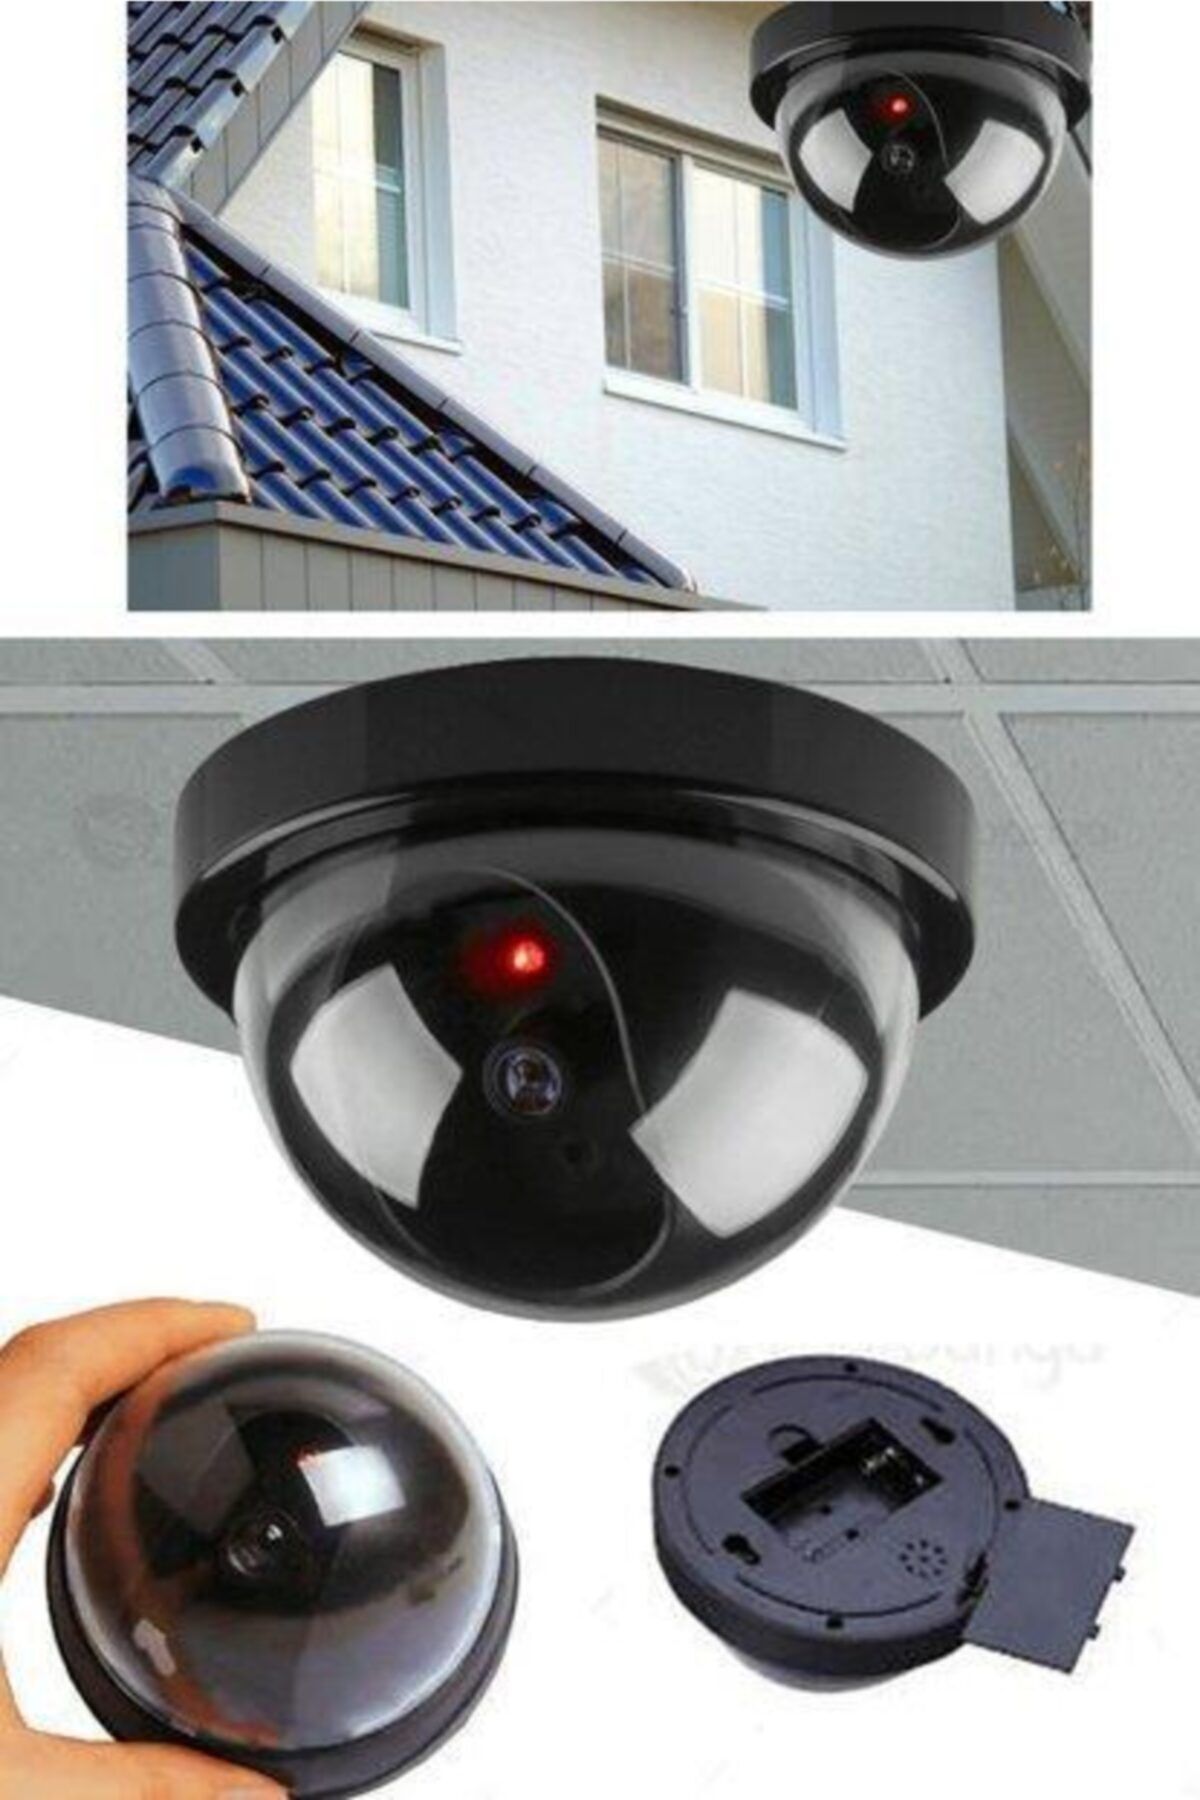 Çokuygunuz Caydırıcı Hırsız Önleyici Gerçek Görünümlü Dome Güvenlik Kamerası